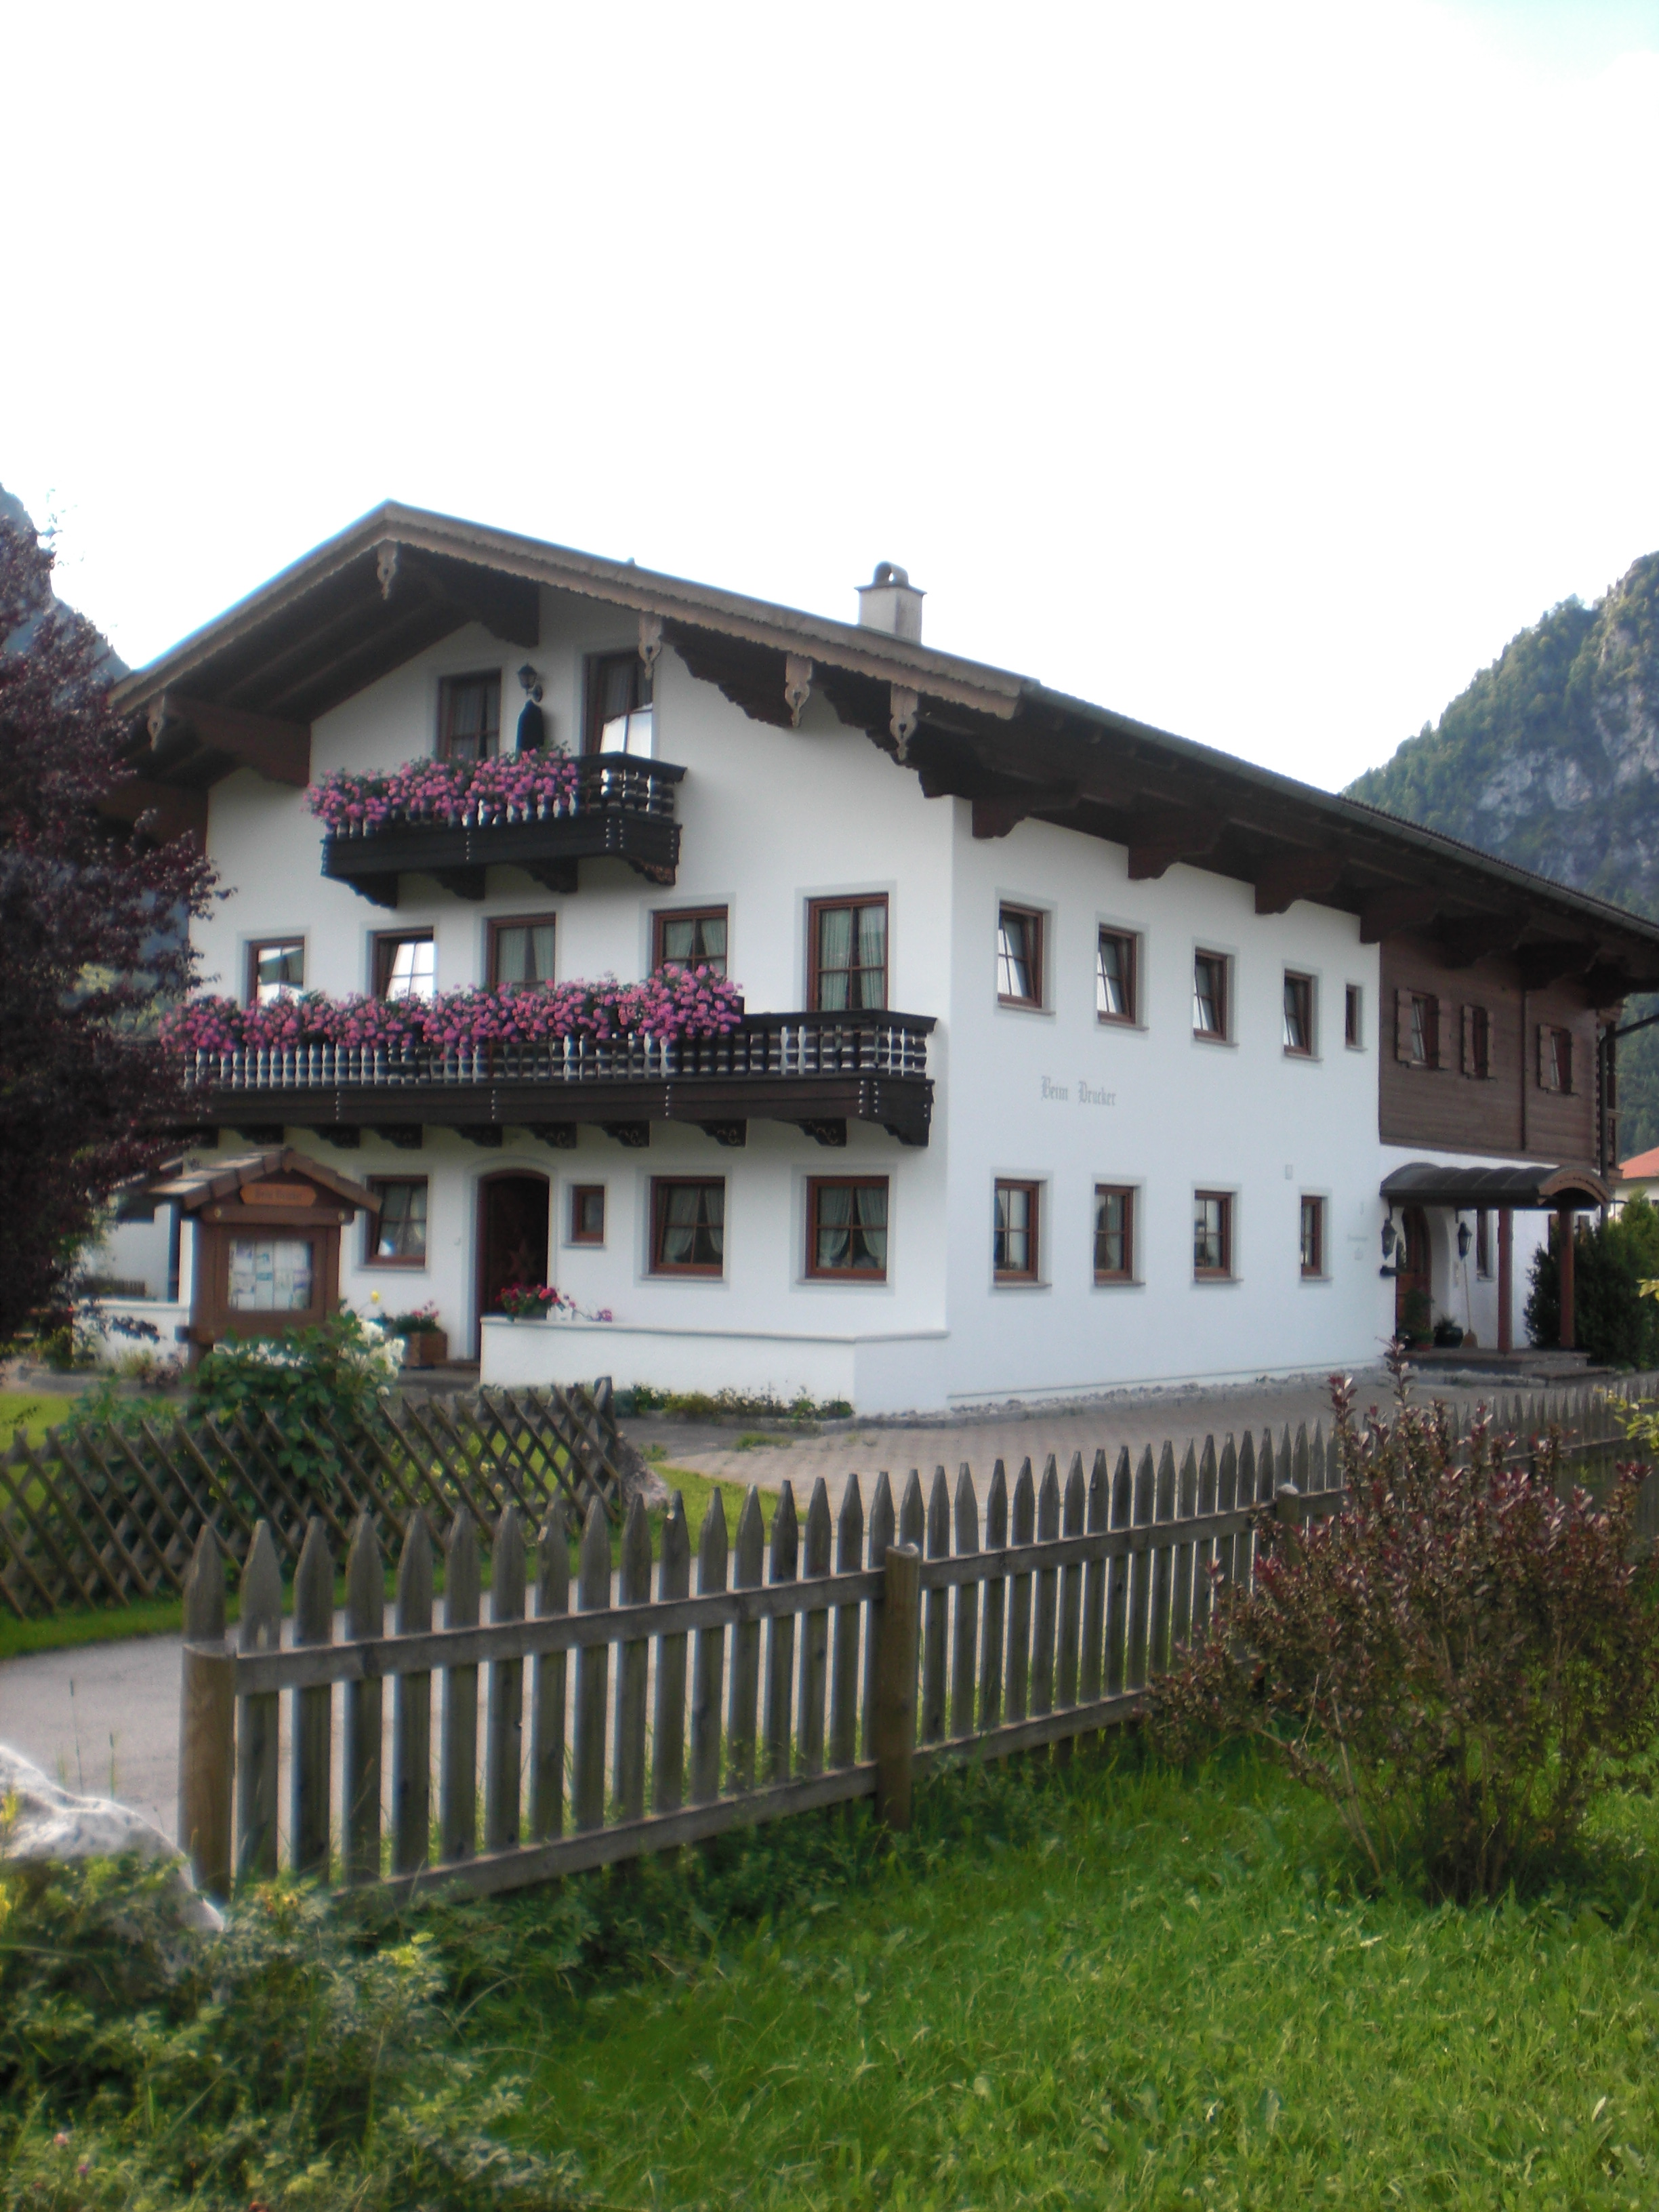 Gästehaus Beim Drucker - Chiemgau Karte (DE I Ferienwohnung  Chiemgauer Alpen